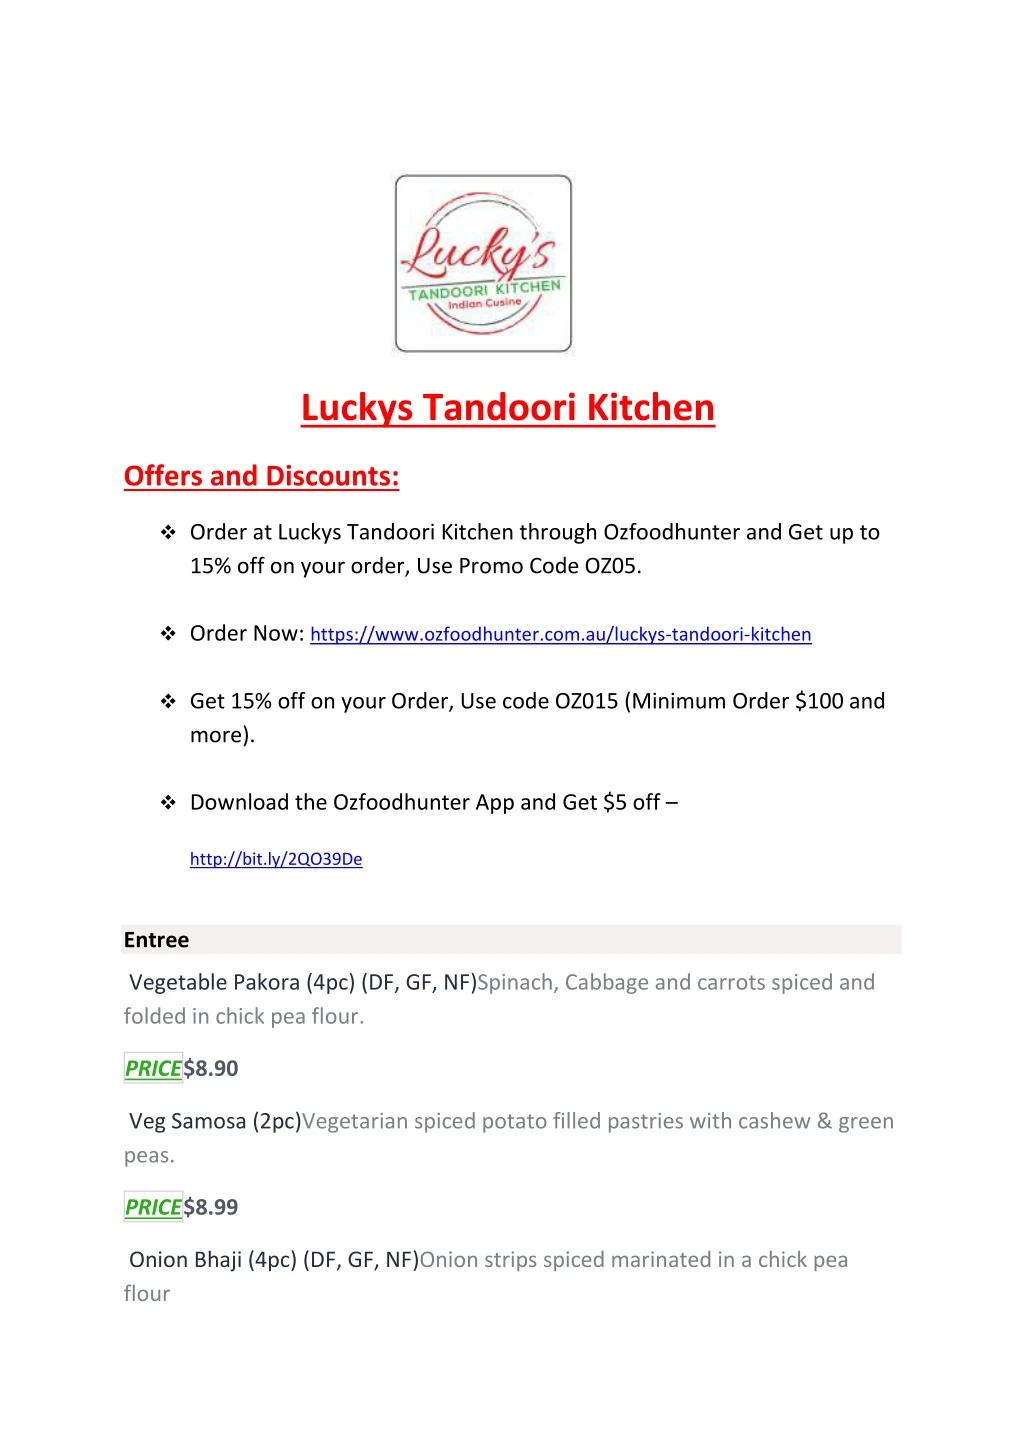 luckys tandoori kitchen